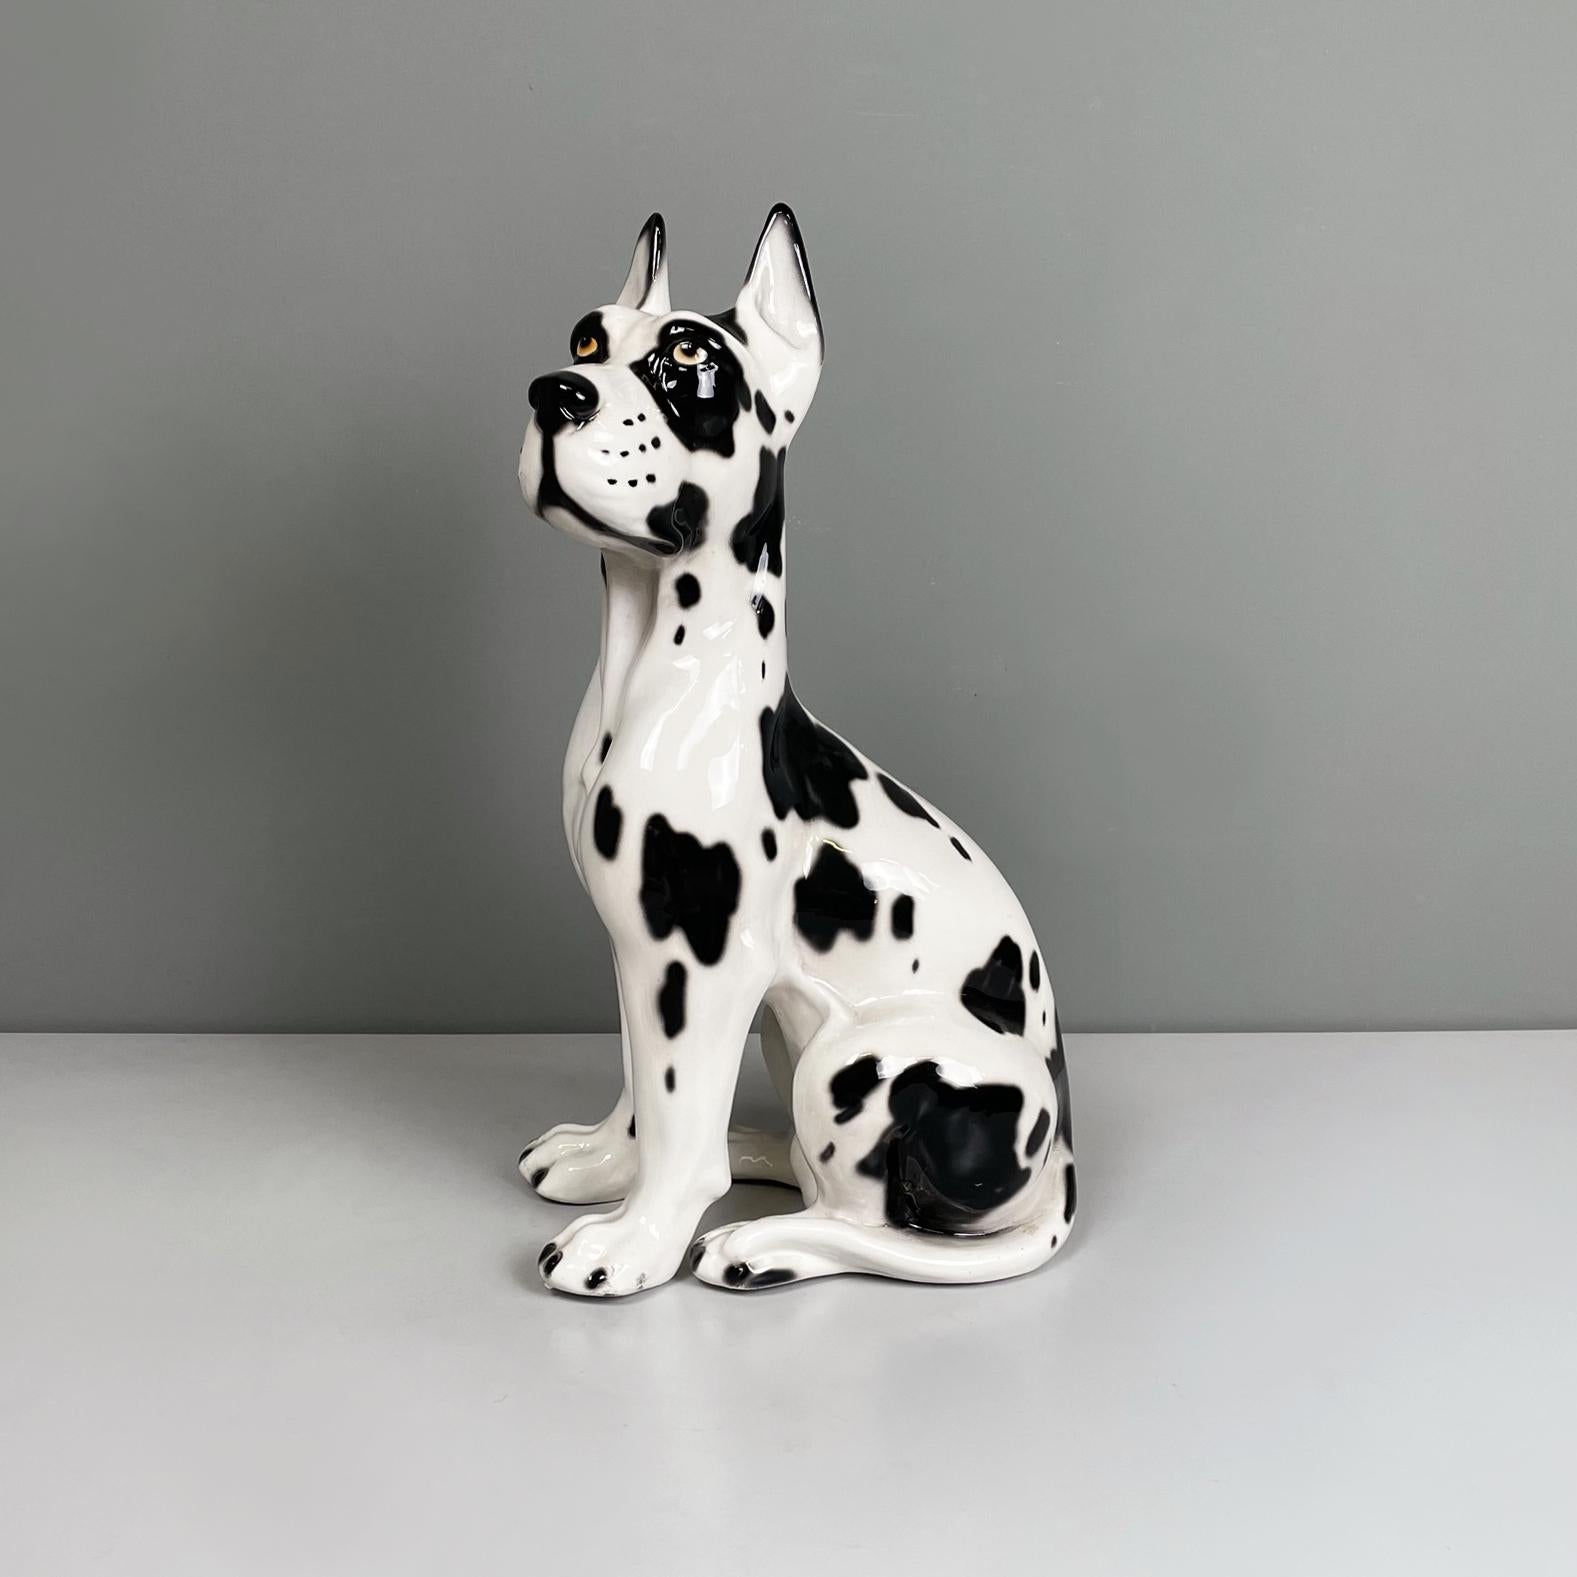 Sculpture moderne italienne en céramique noire et blanche représentant un chien dogue allemand Arlequin, années 1980
Sculpture en céramique représentant un dogue arlequin assis sur ses pattes arrière. Le chien présente une musculature